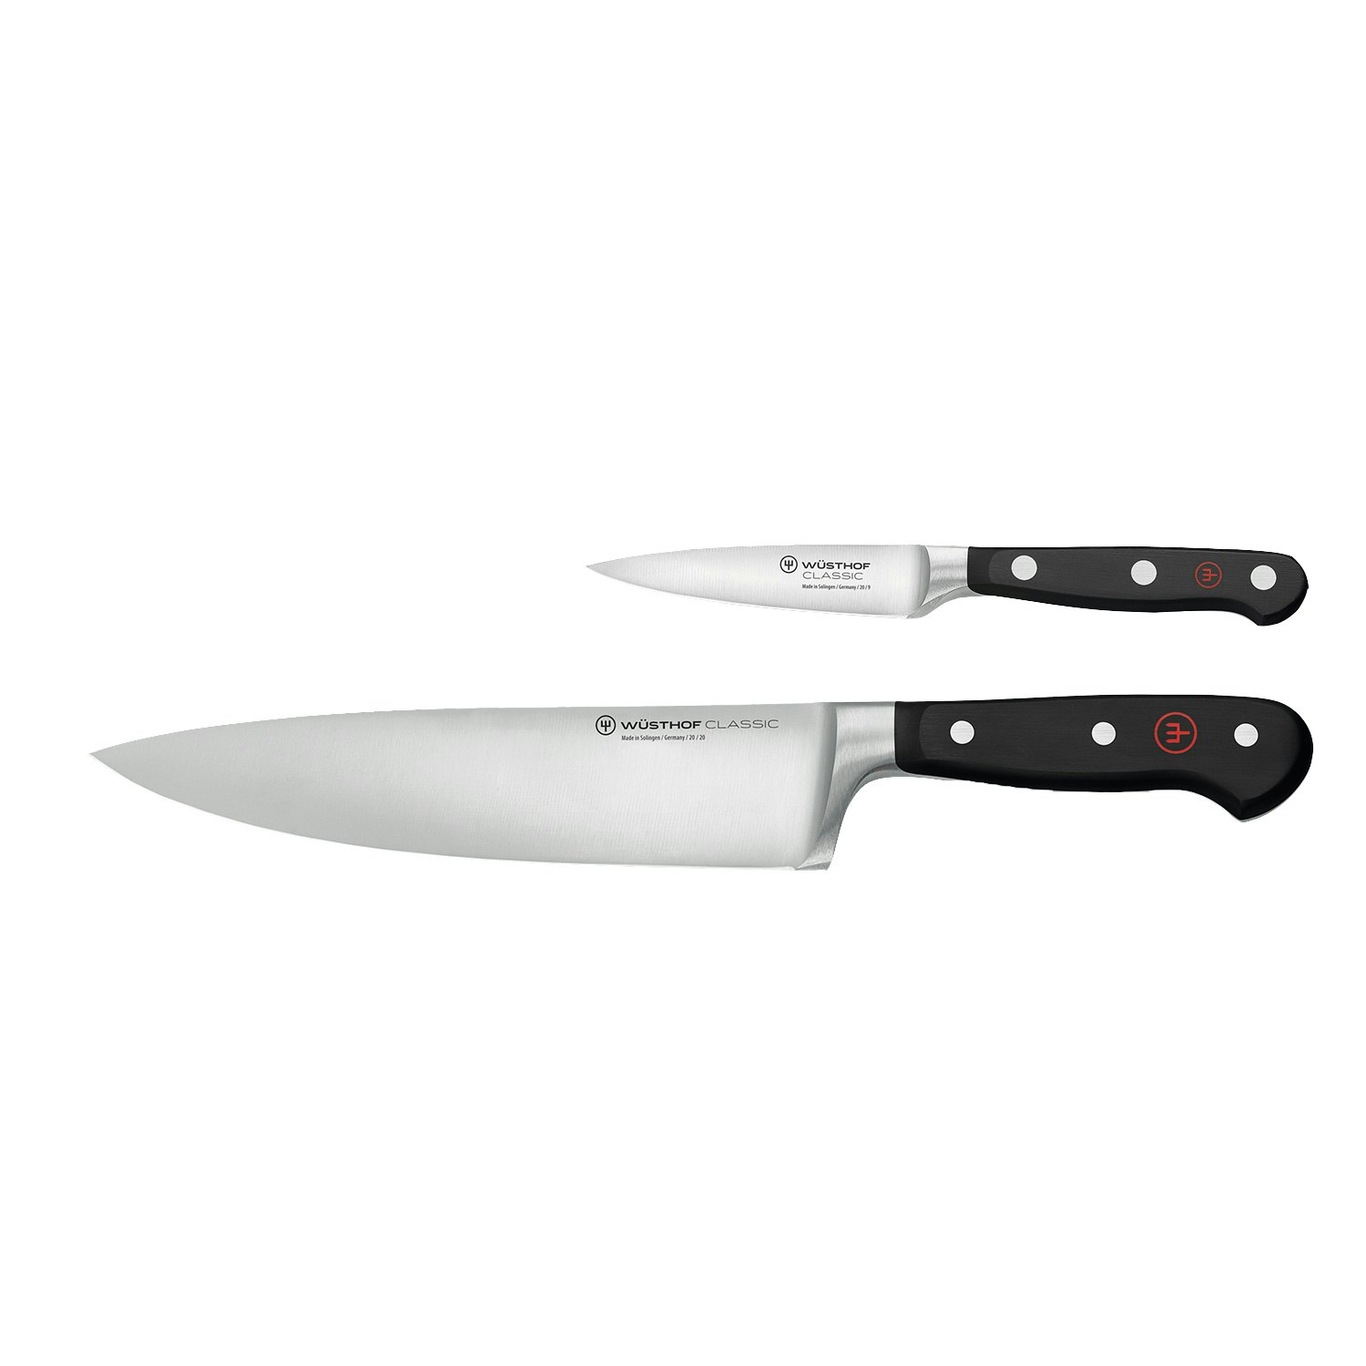 https://royaldesign.com/image/2/wusthof-classic-knife-set-2-pack-1?w=800&quality=80